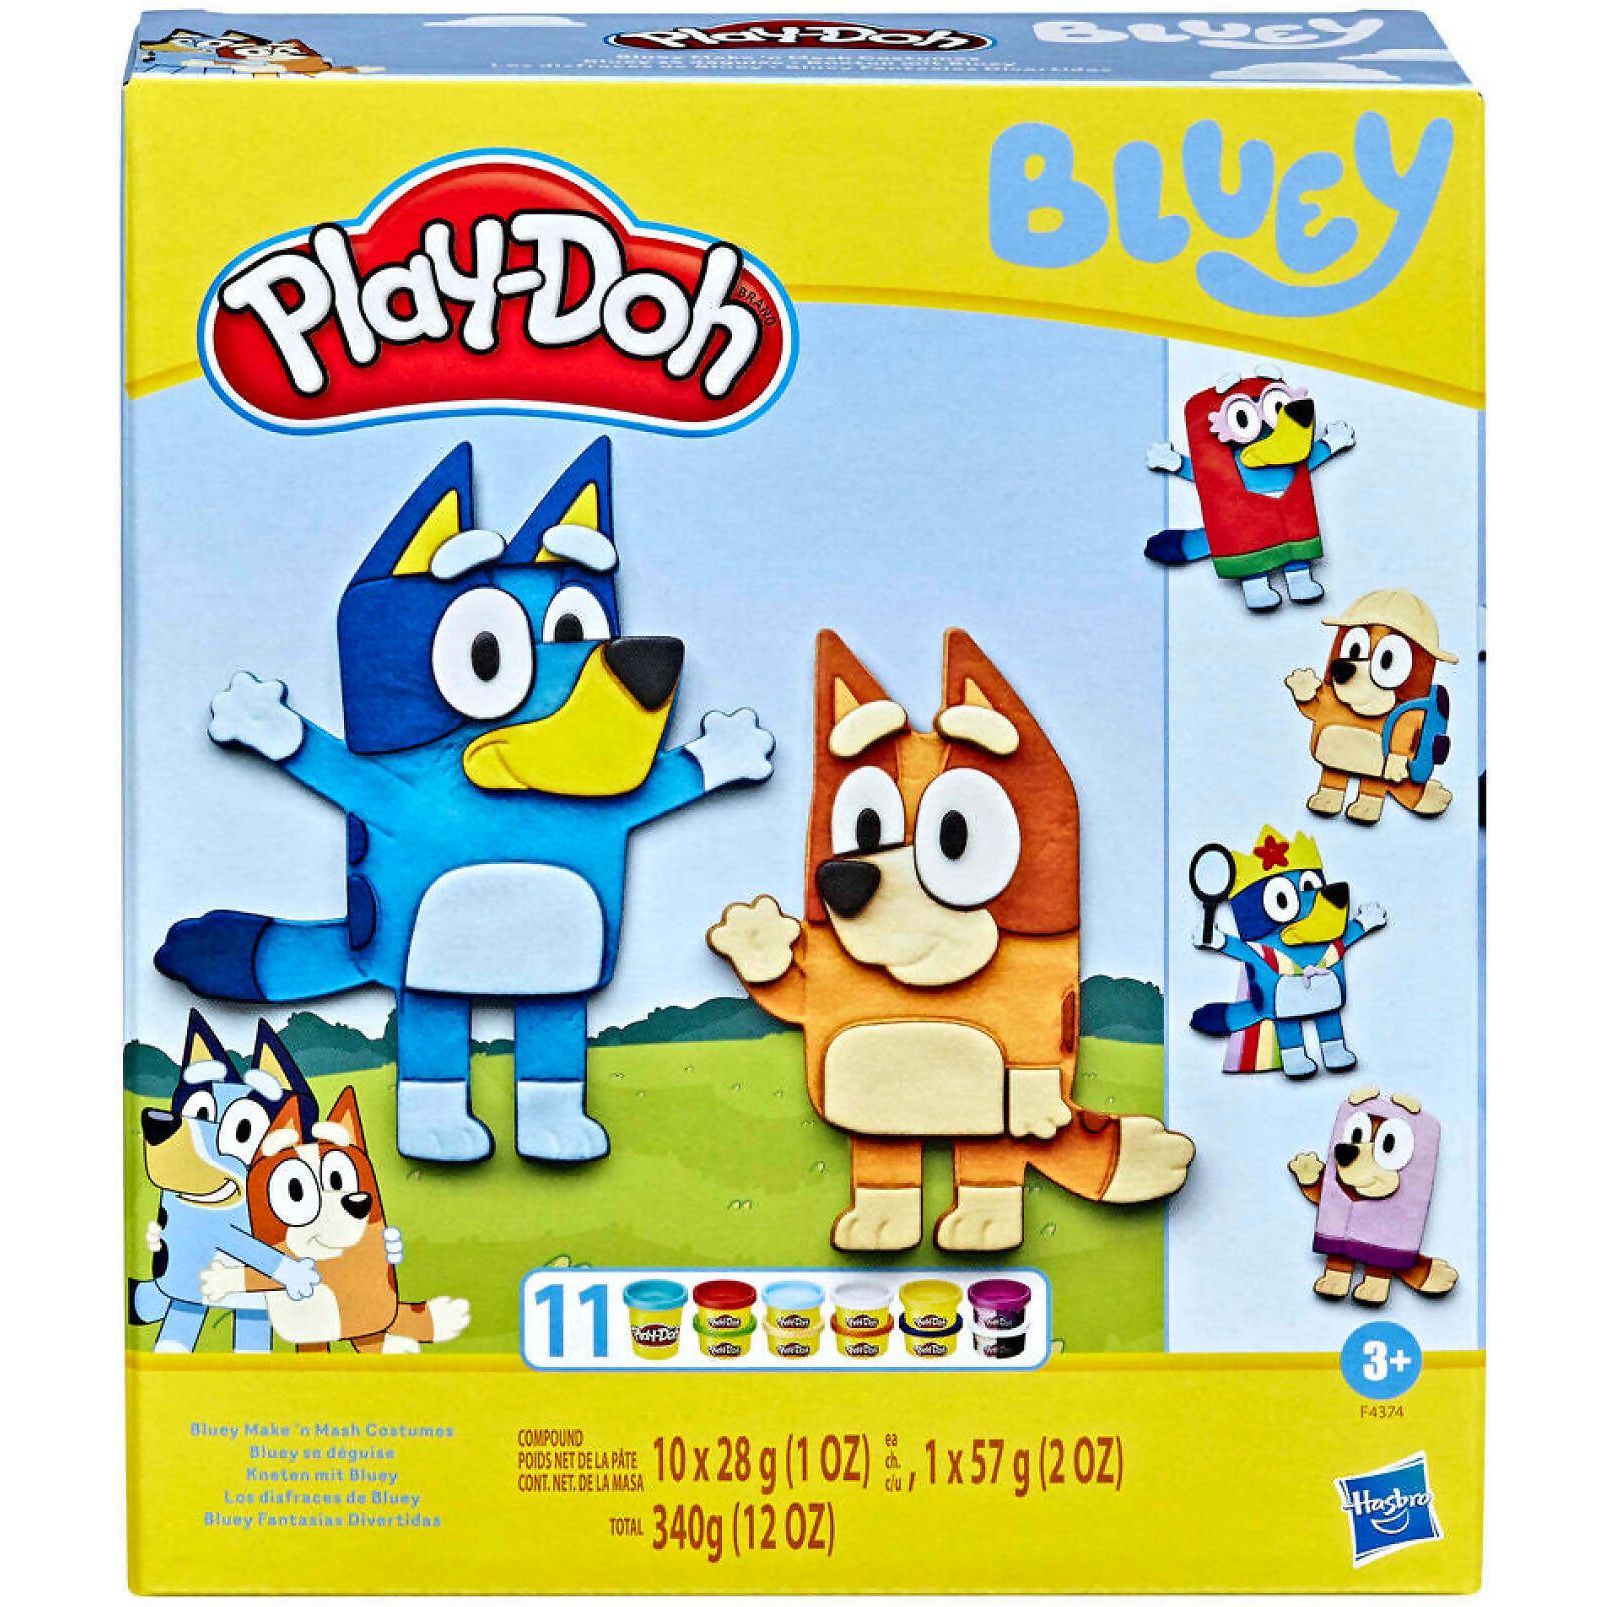 Набор Play-Doh Bluey Make N Mash Costumes игровой, для лепки, F43745L0 набор самоклеящихся закладок make your mark неоновые 5 блоков